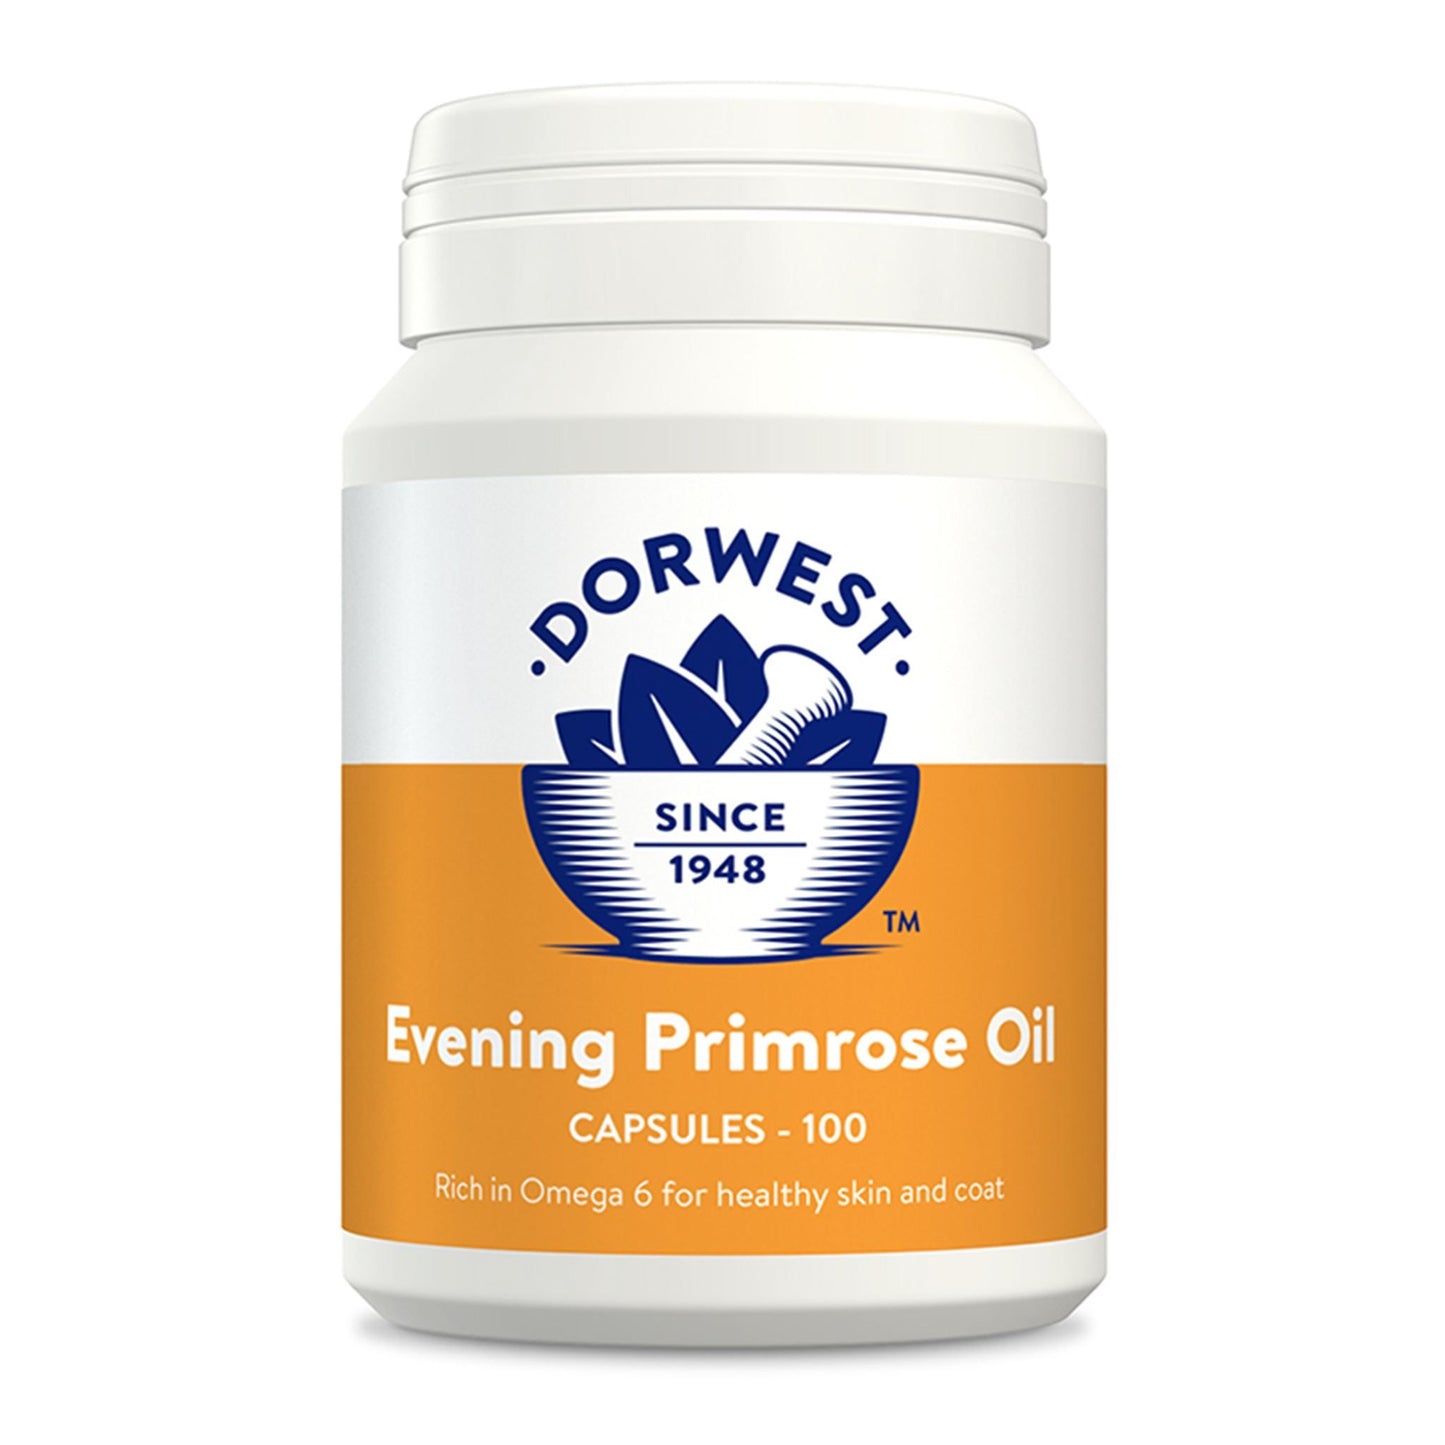 New Dorwest Primrose Oil Capsules